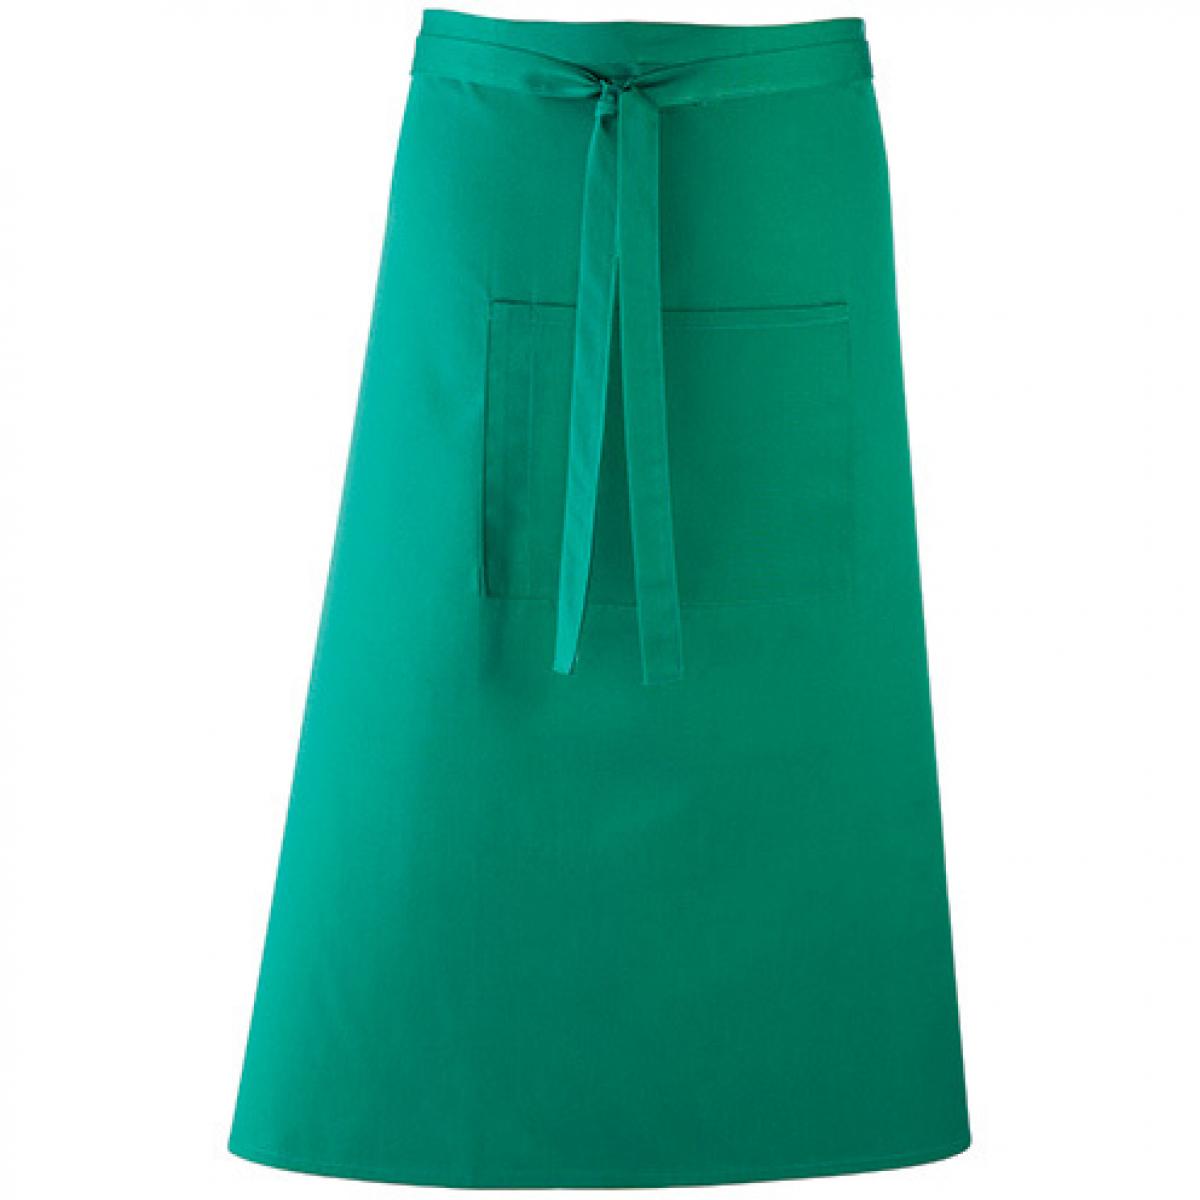 Hersteller: Premier Workwear Herstellernummer: PR158 Artikelbezeichnung: Barschürze Colours - 90 x 80 cm - Hauswäsche: bis 60 °C Farbe: Emerald (ca. Pantone 341)